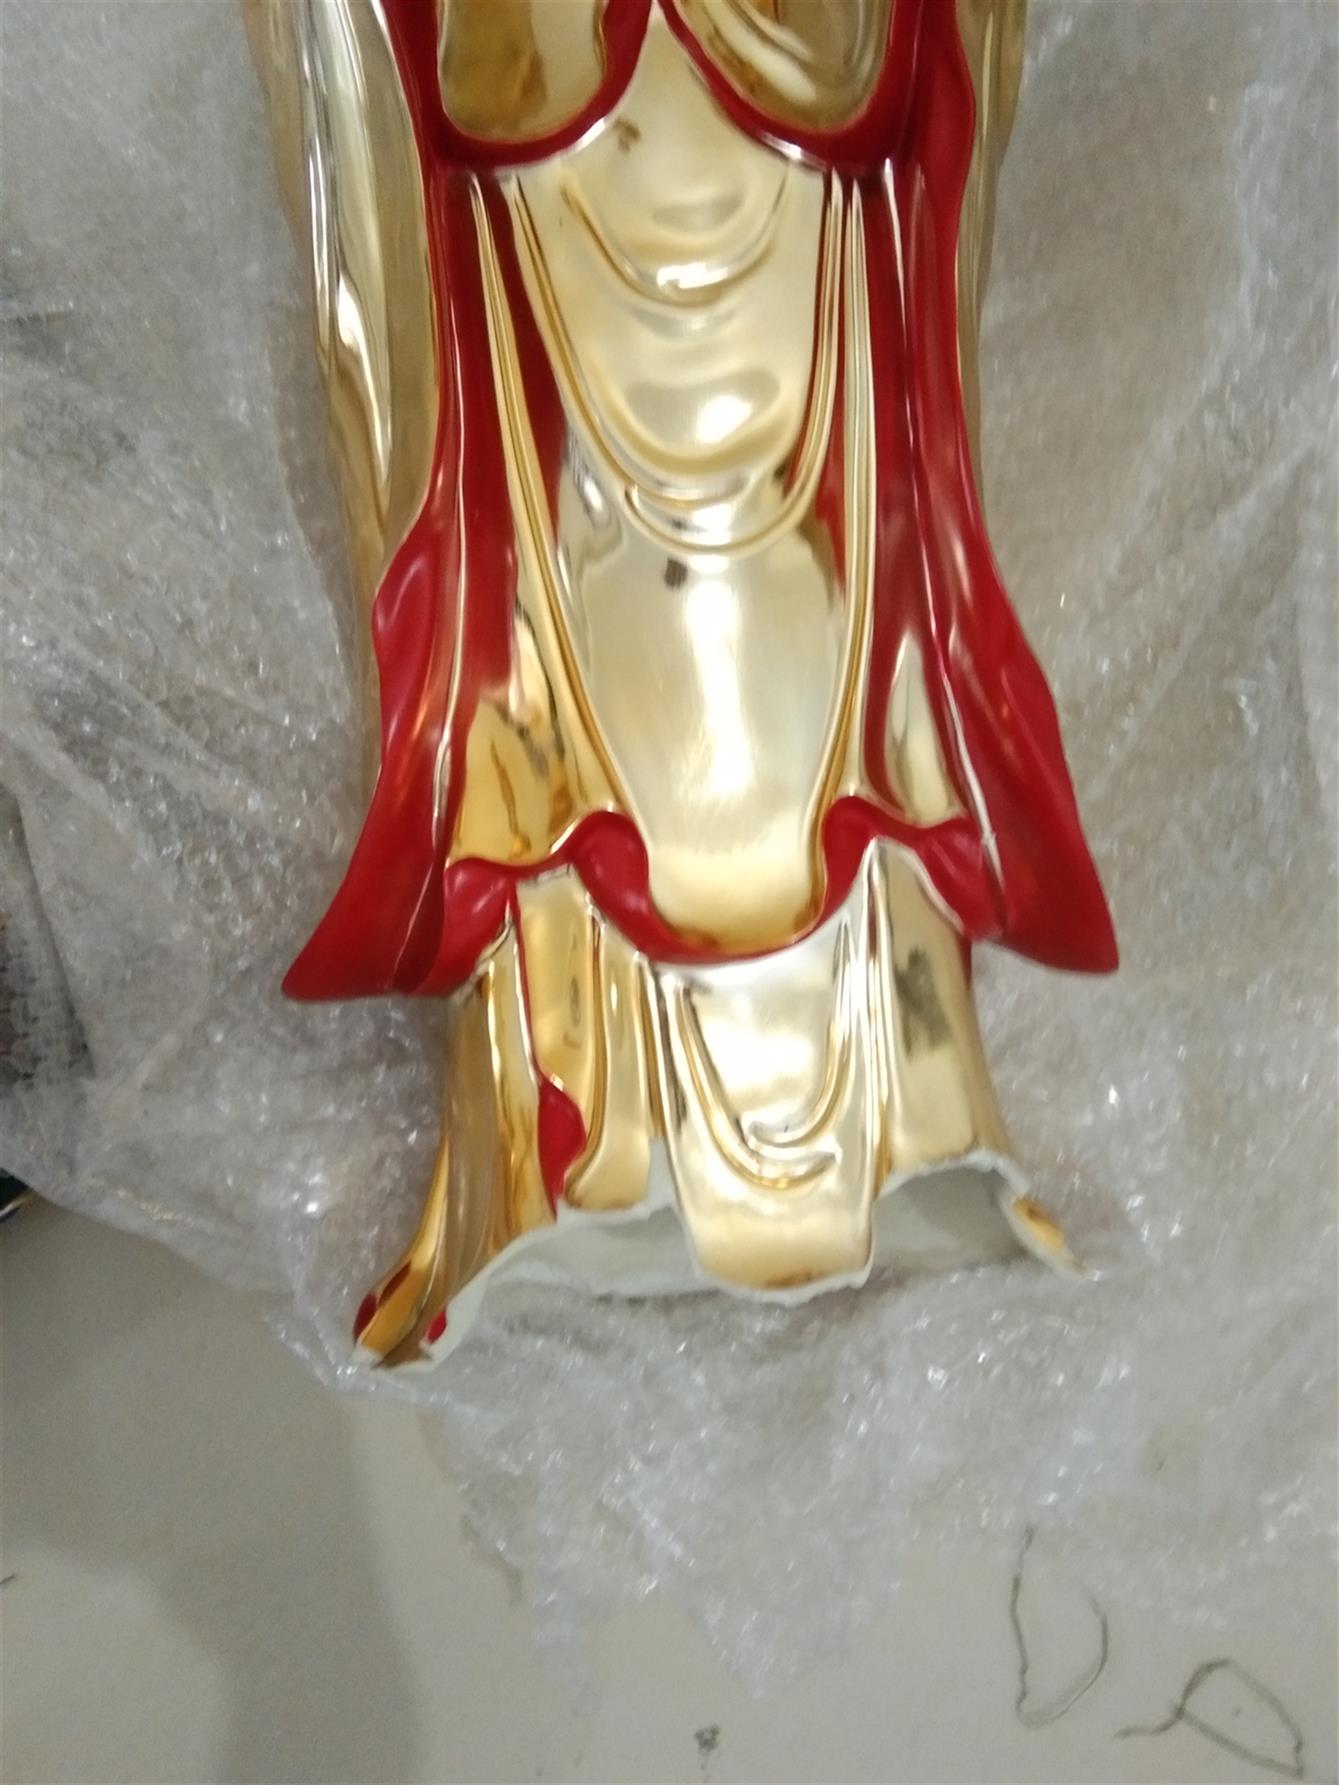 惠州陶瓷佛像修复翻新 南京美瓷工艺品有限公司